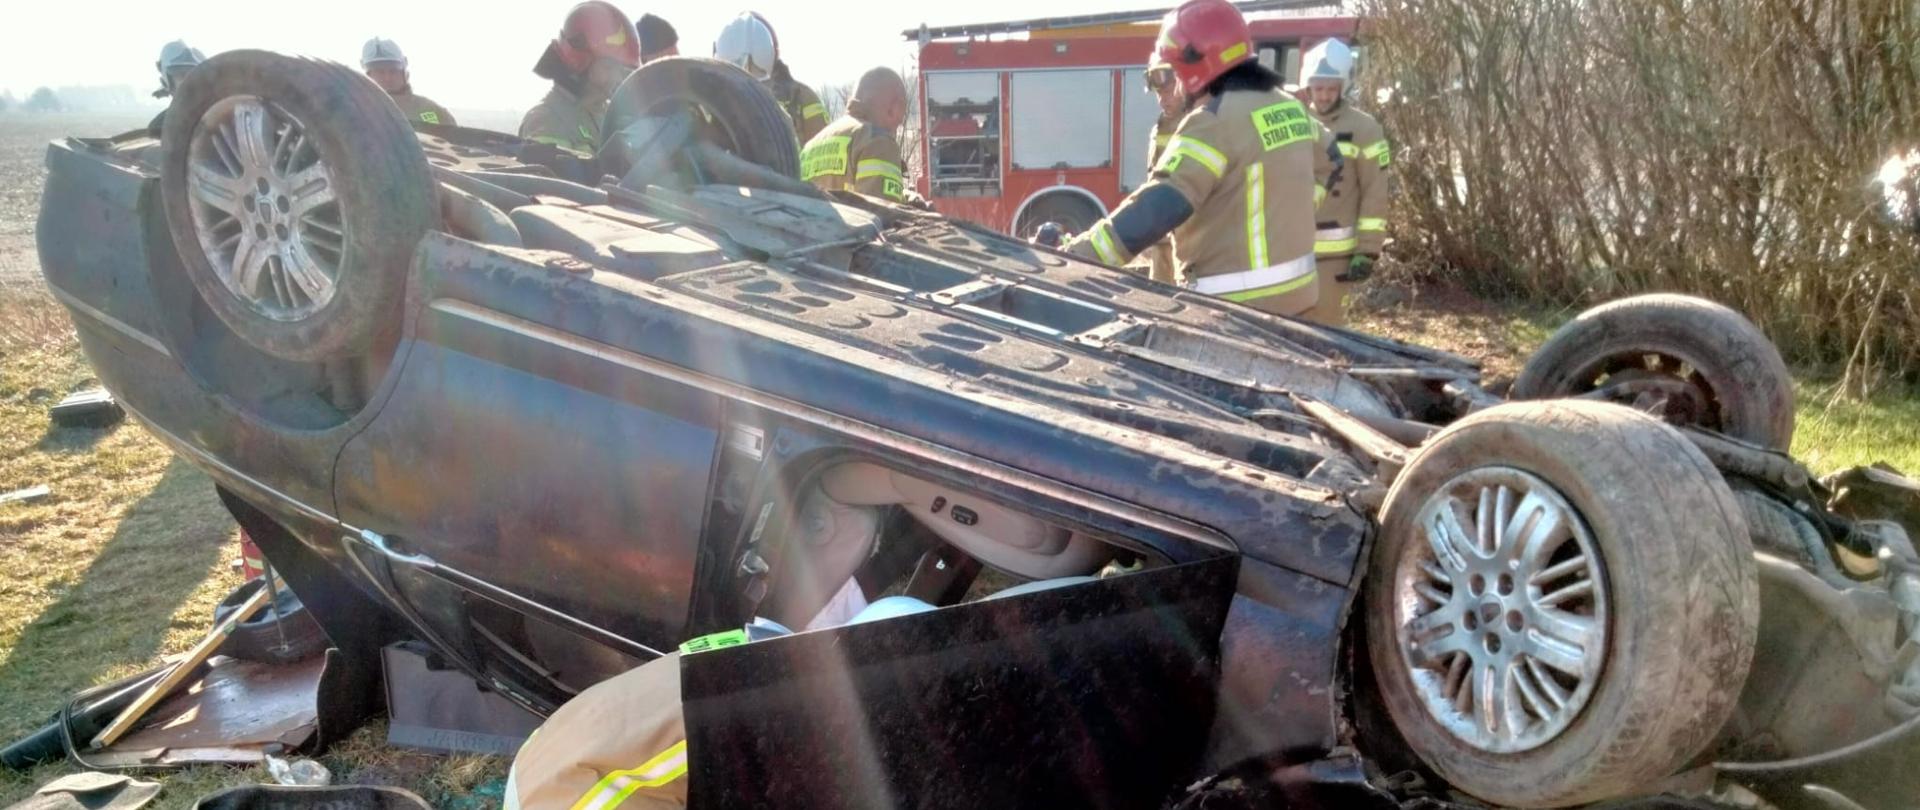 Fotografia przedstawia leżący na dachu samochód osobowy, w tle za wrakiem widoczny pojazd pożarniczy, przy pojeździe pracują strażacy w ubraniach specjalnych i w hełmach. Jest dzień, słonecznie.